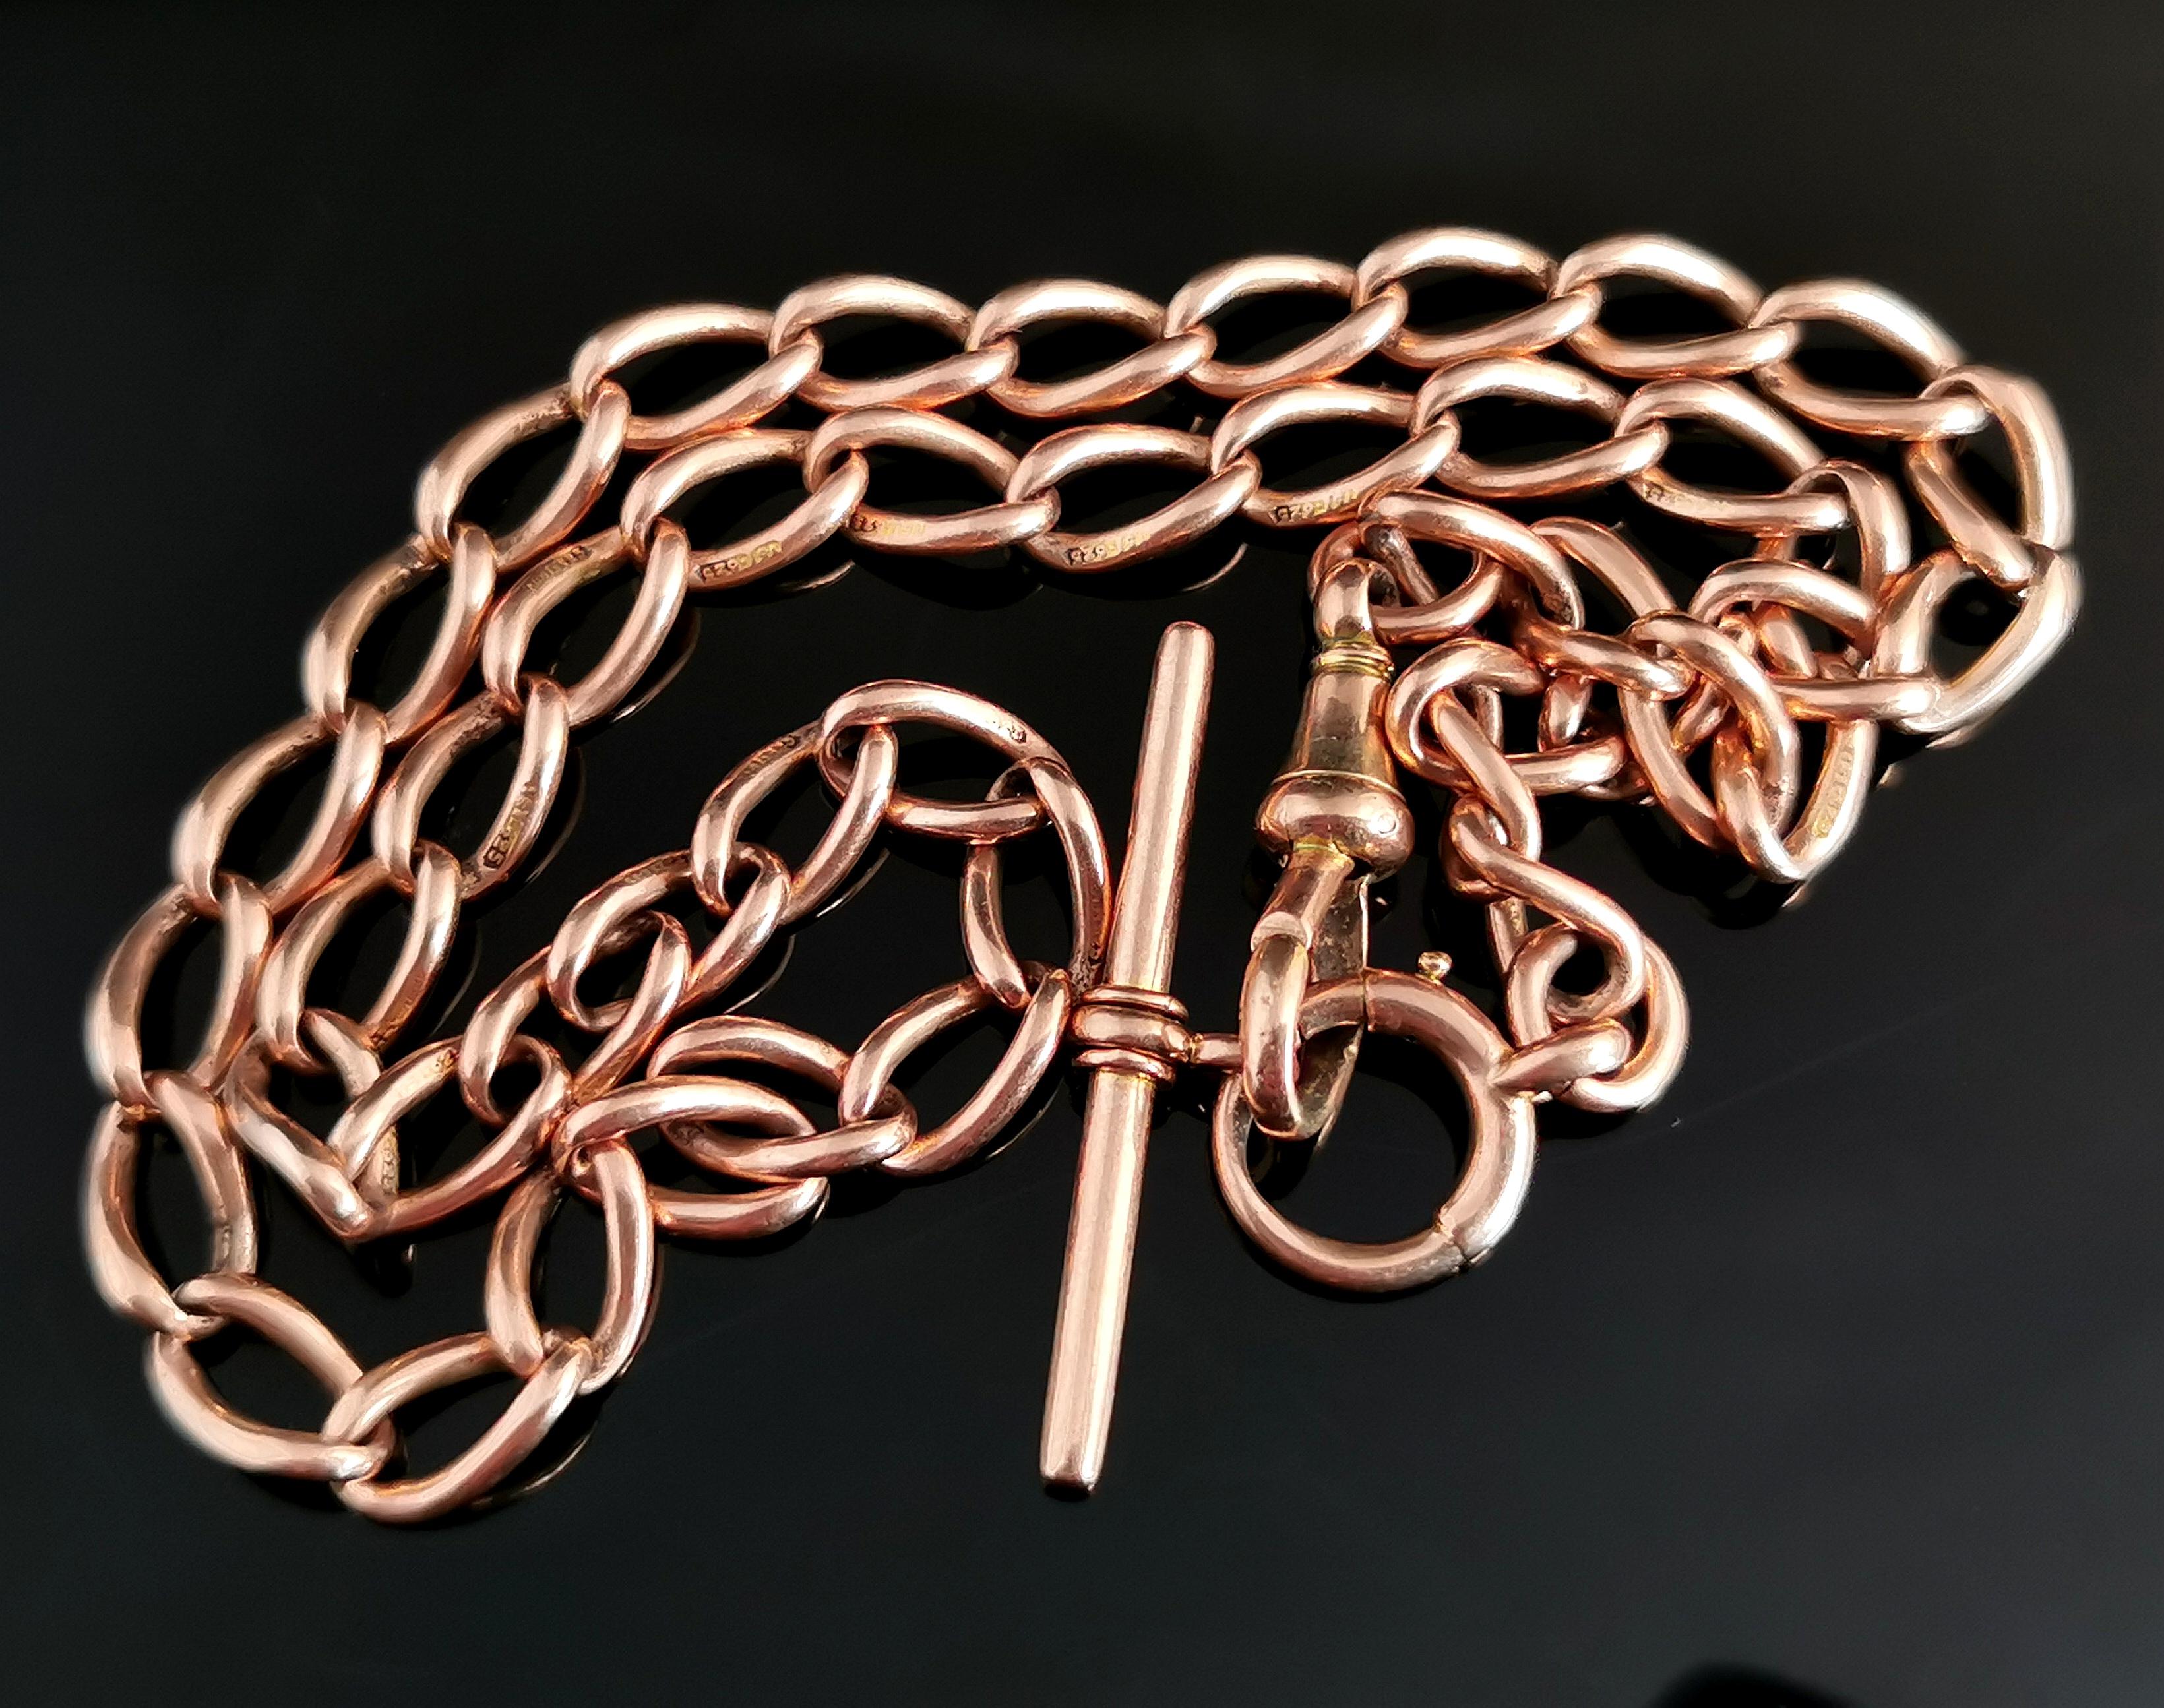 Antique 15k Gold Albert Chain, Watch Chain Necklace, Victorian 10